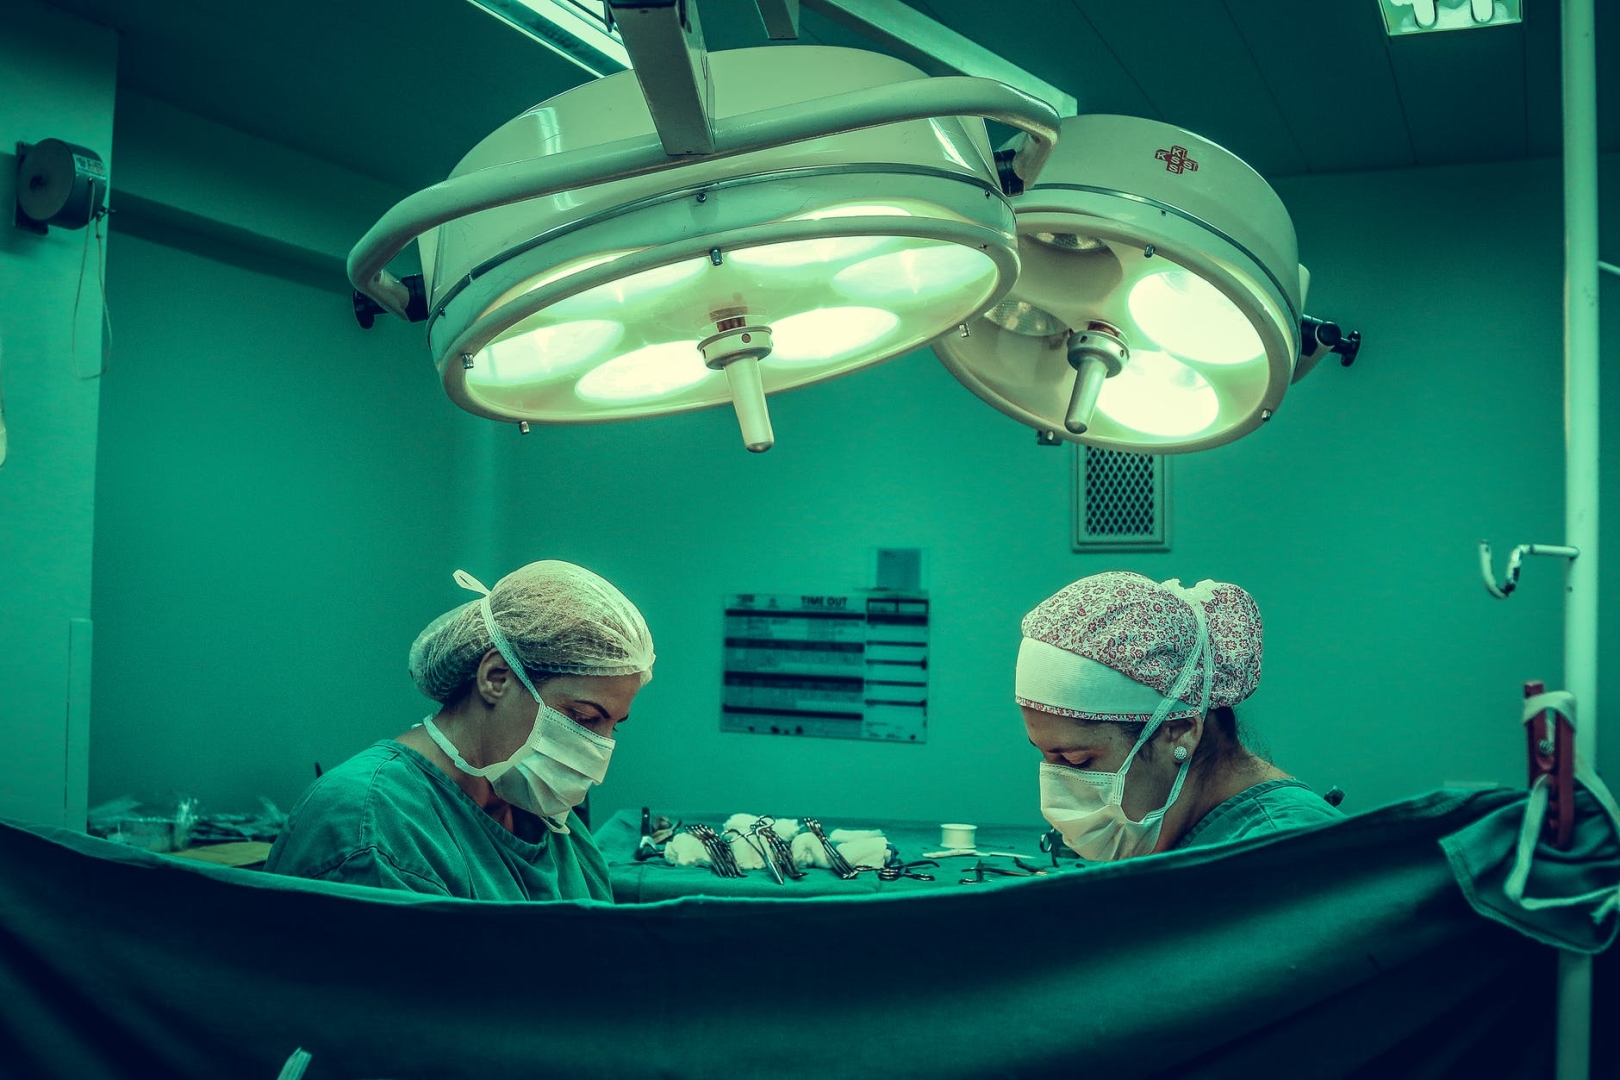 Poradie najlepších chirurgických svetiel pre rok 2020